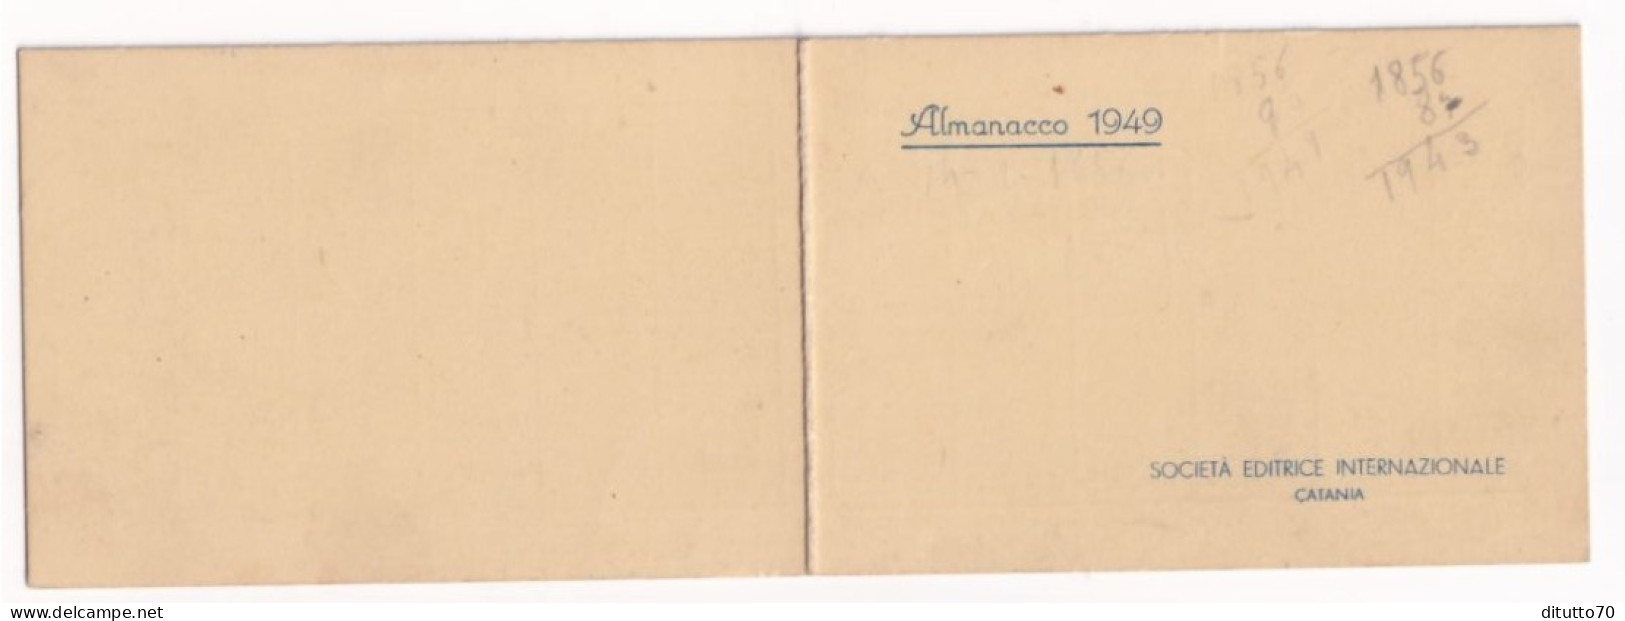 Calendarietto - Società Editrice Internazionale - Catania - Anno 1949 - Petit Format : 1941-60